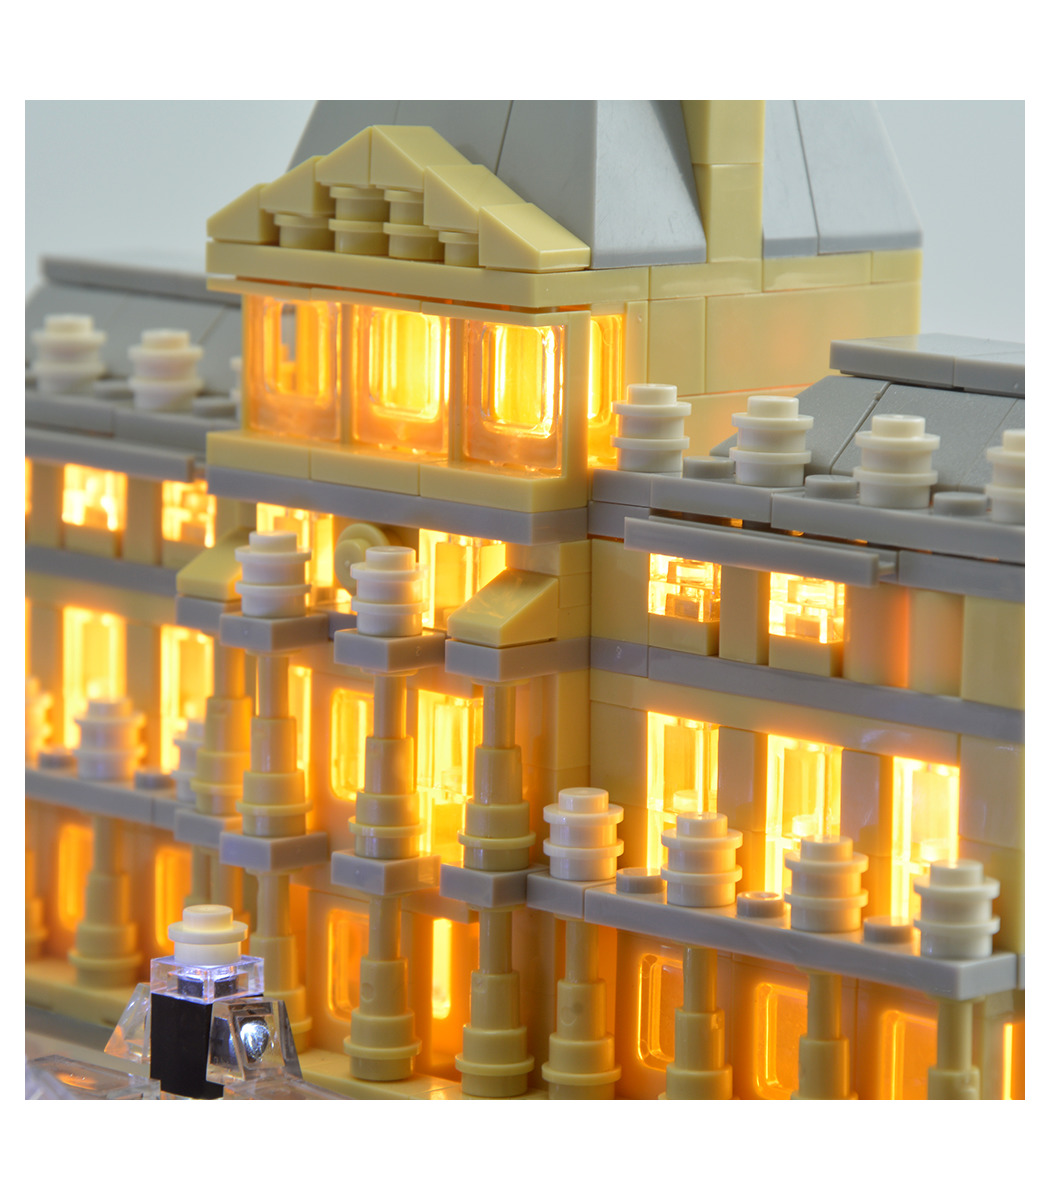 LEGO Architecture 21024 Louvre Building Kit